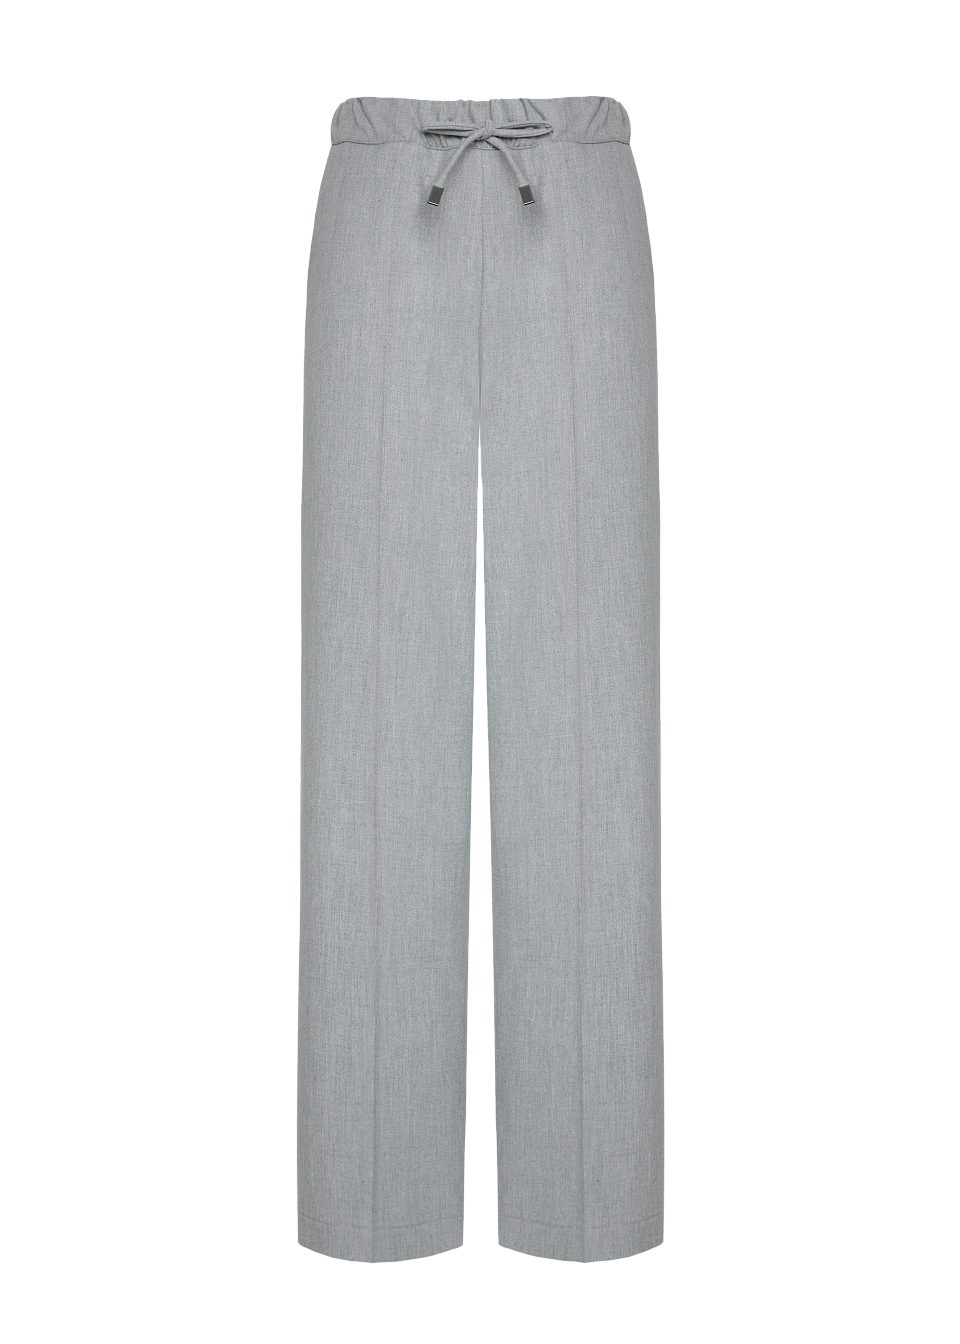 Жіночі штани Stimma Ролан, колір - світло сірий